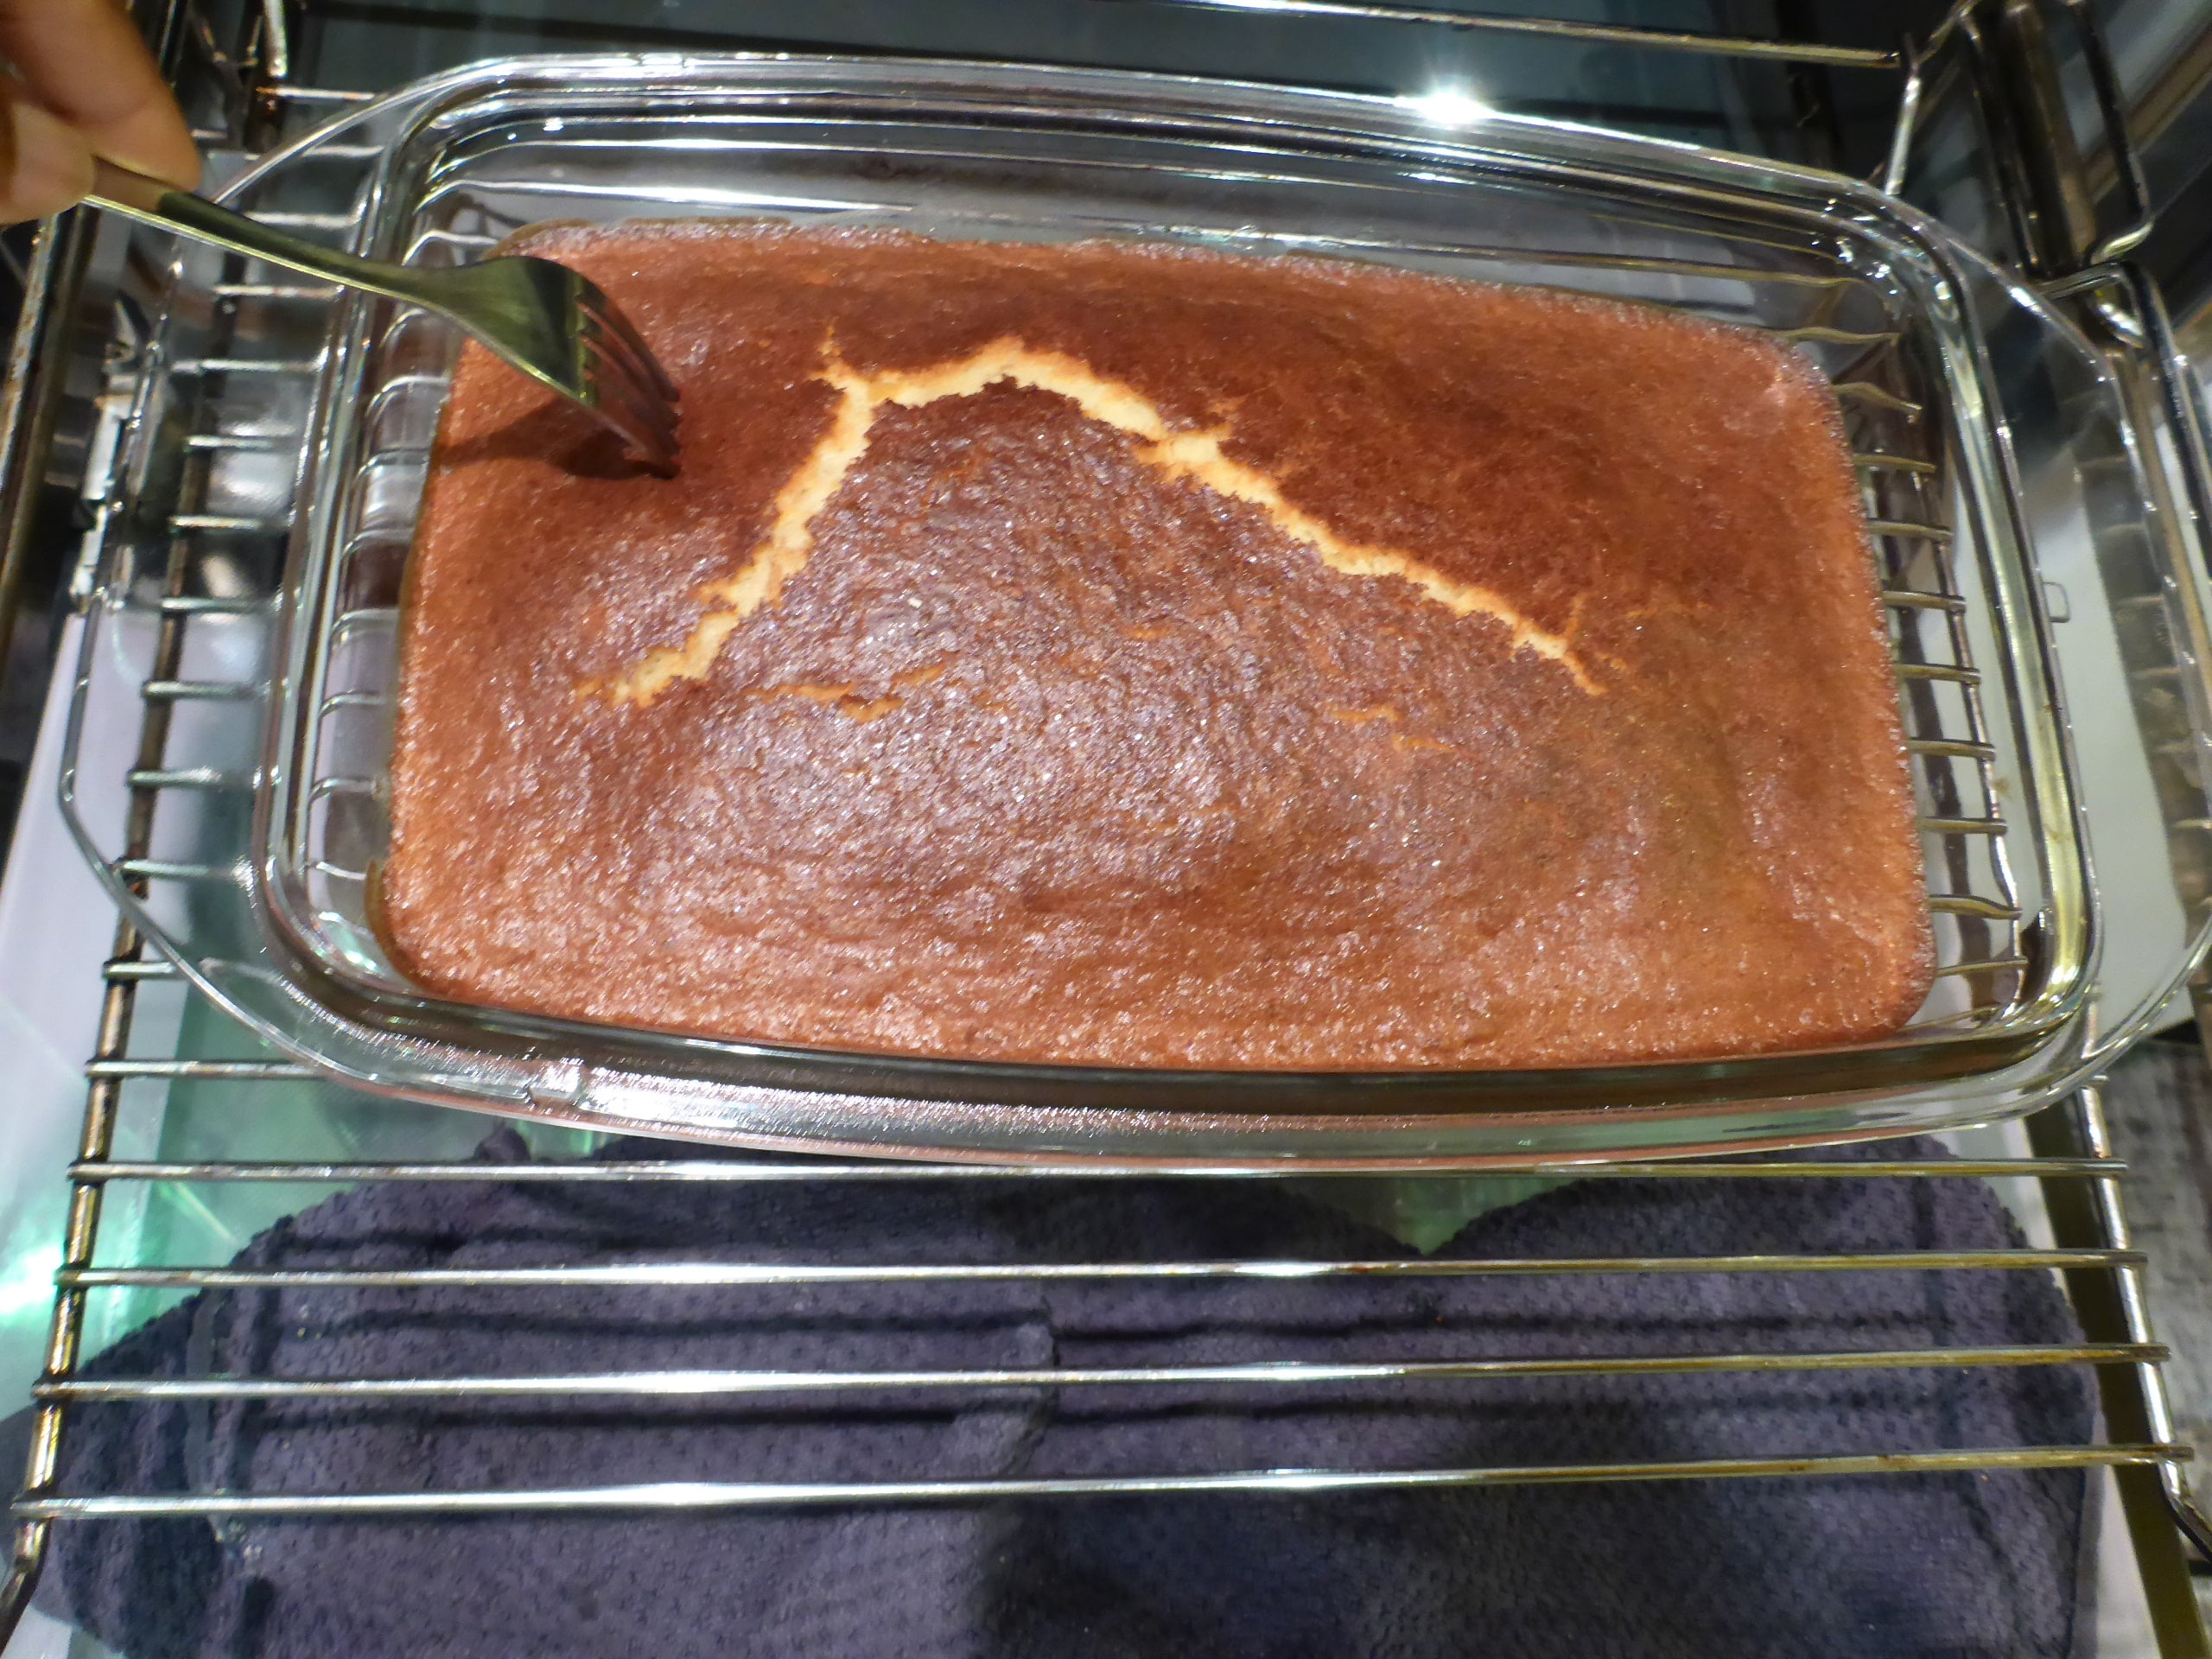 Ein Bild von einem frisch gebackenen Malva Pudding, der gerade aus dem Ofen genommen wurde und mit einer Gabel gepickst wird, um sicherzustellen, dass er den Sirup gut aufsaugt.